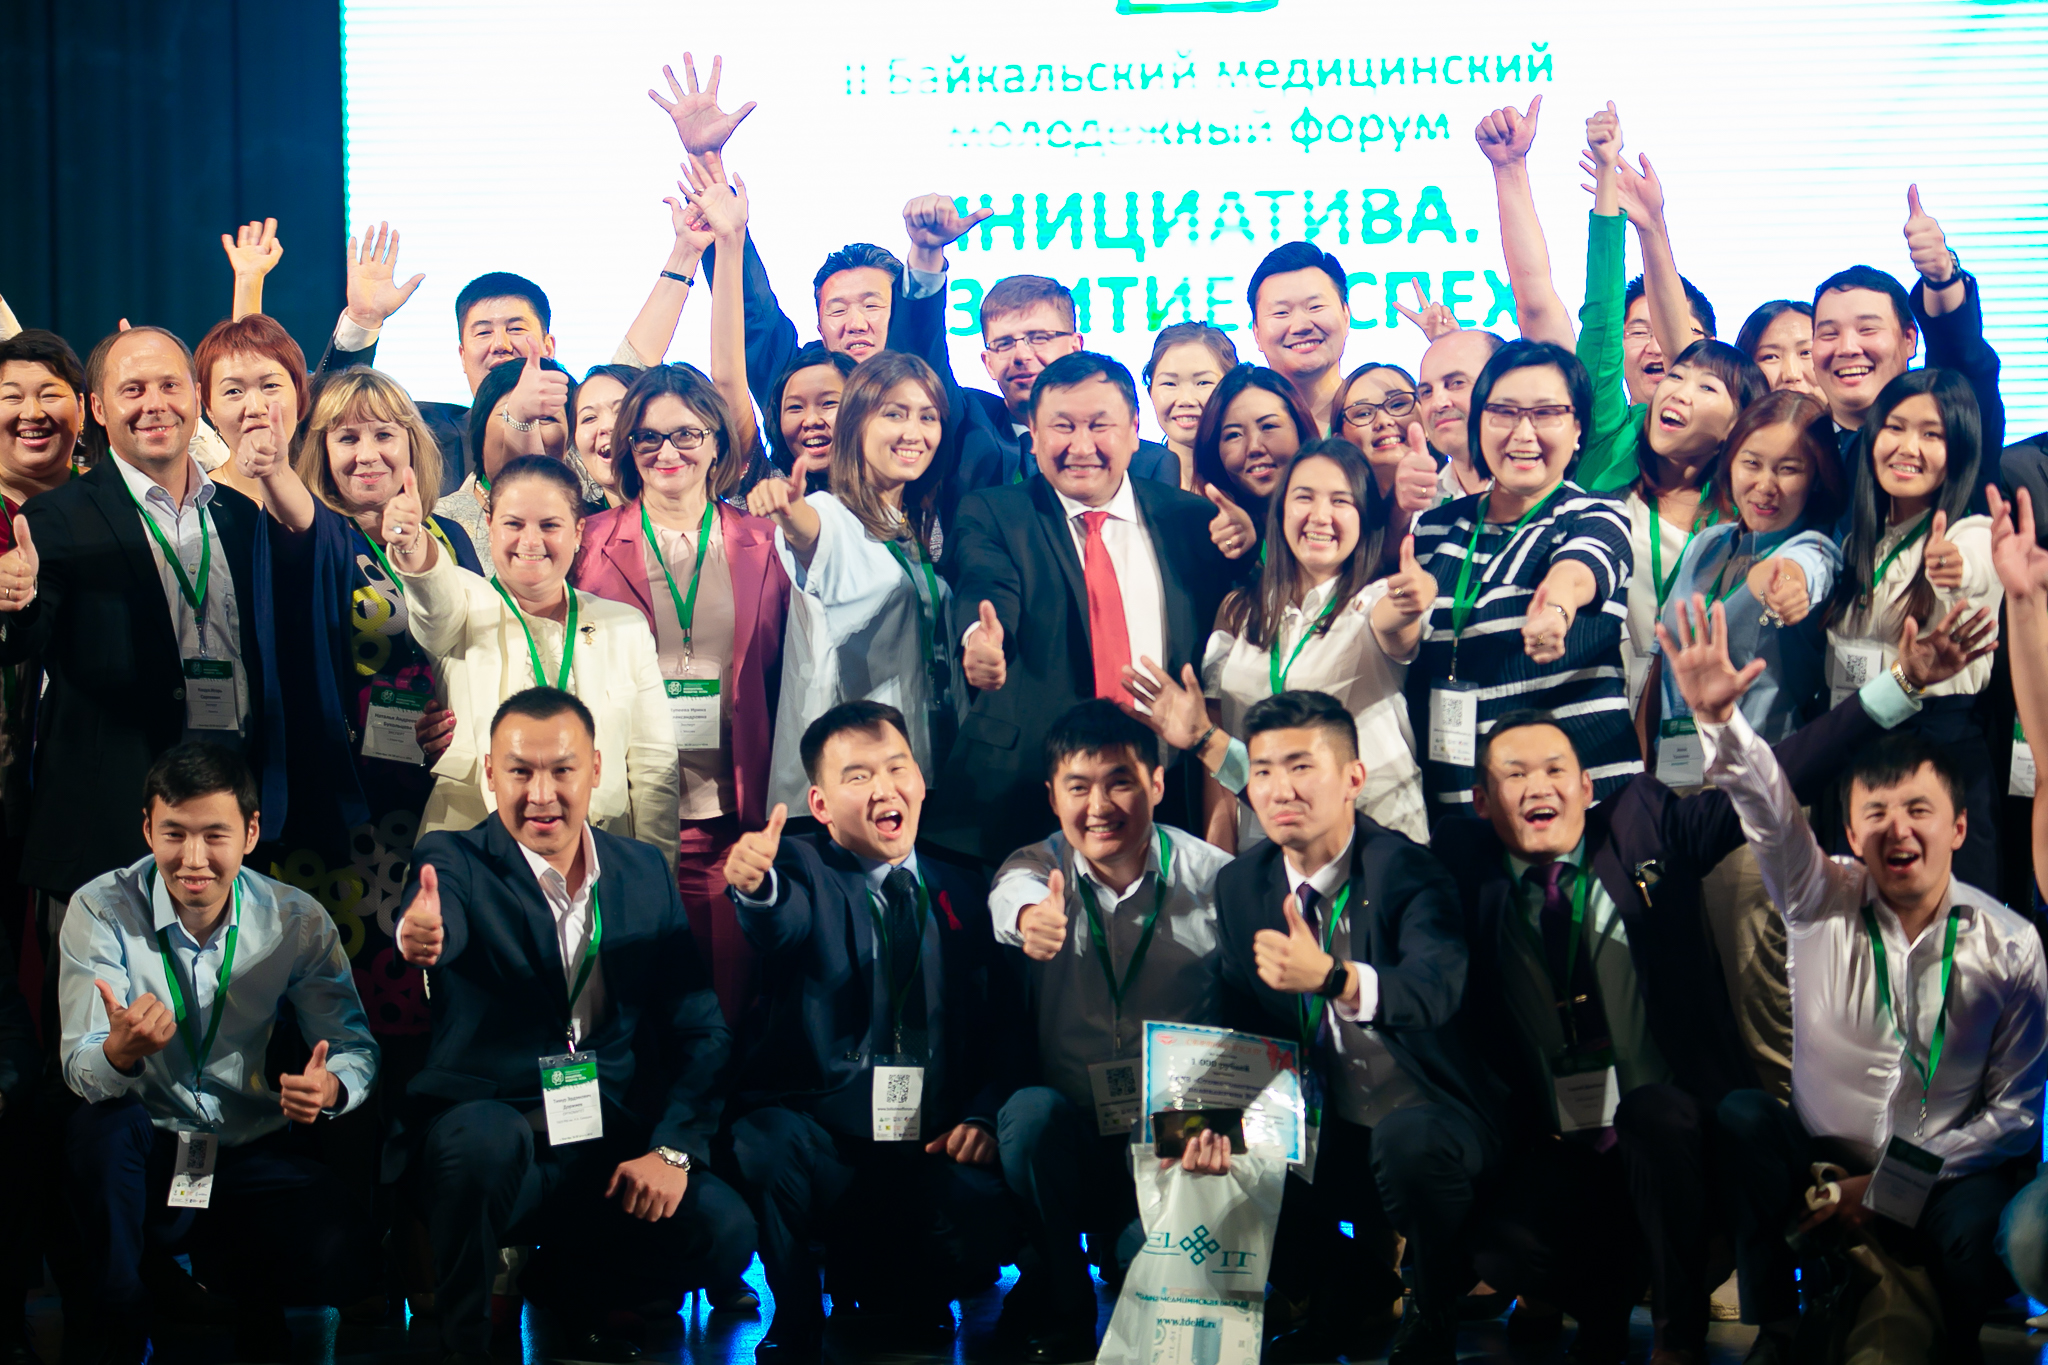 Итоги Байкальского медицинского молодежного форума: 8 соглашений, резолюция, поддержка Минздрава РФ и научных сообществ